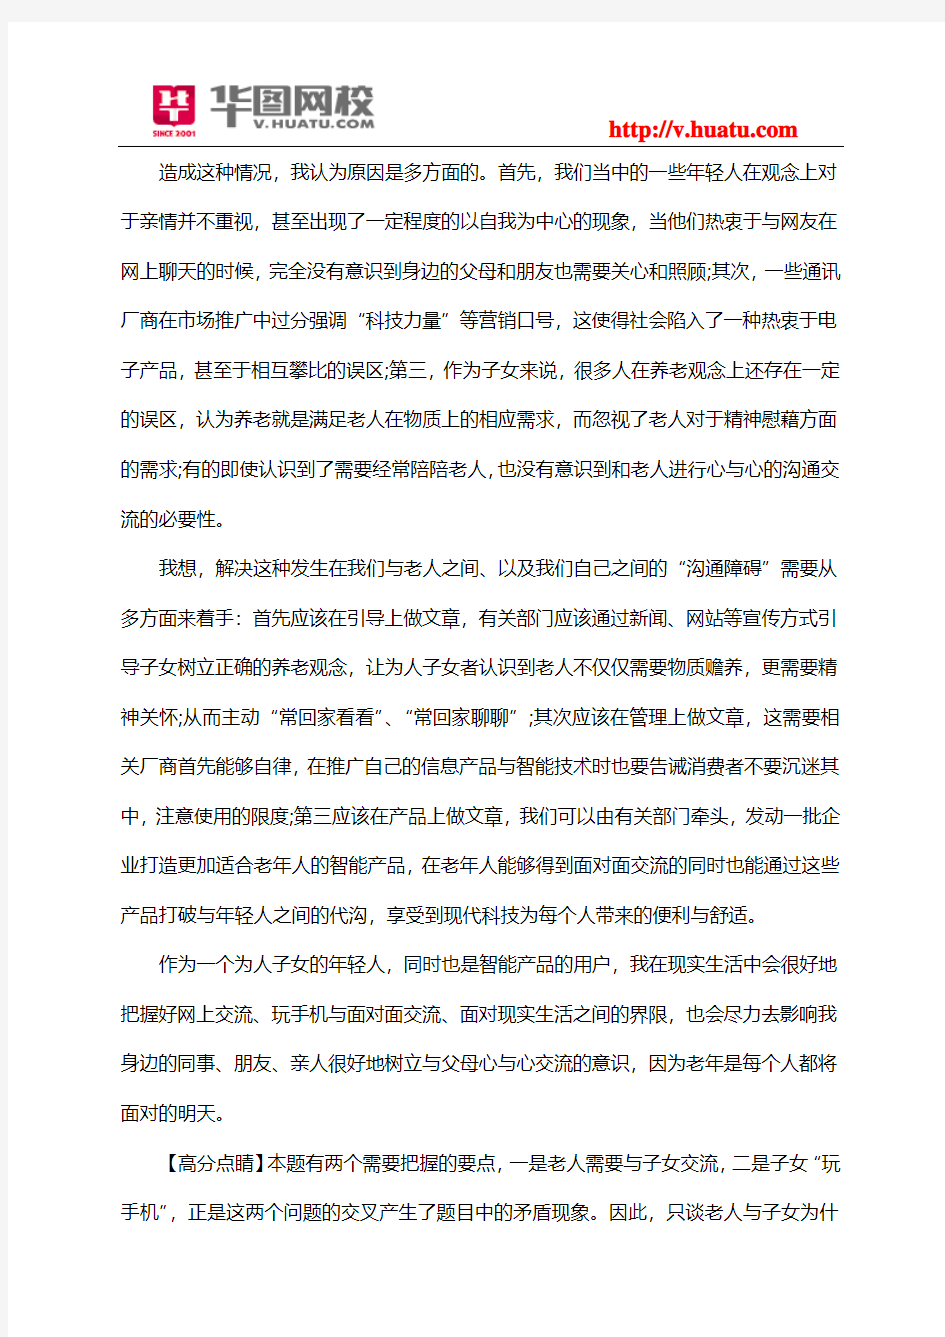 2013广州市天河区事业单位考试复习资料